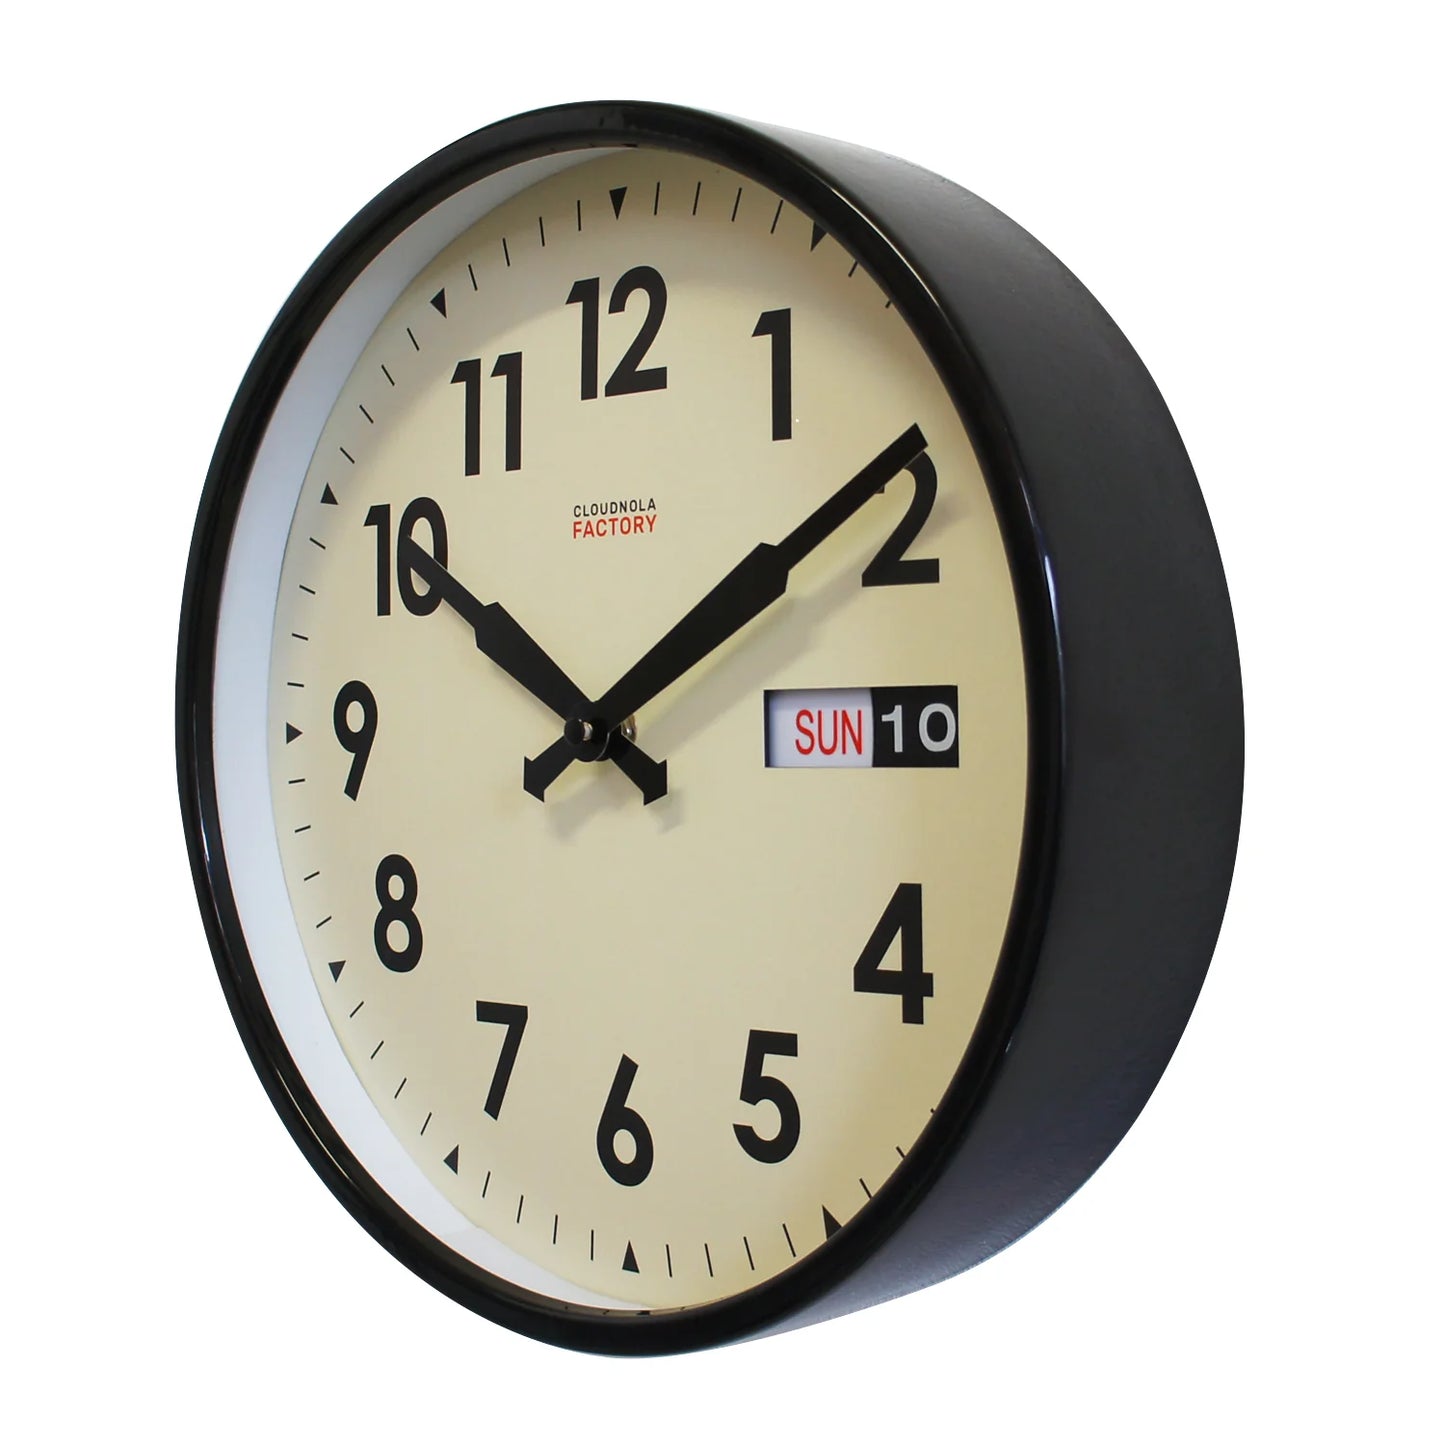 Factory Date Black - Diameter 11.81 - Wall Clock - Silent - Steel Case - Calendar